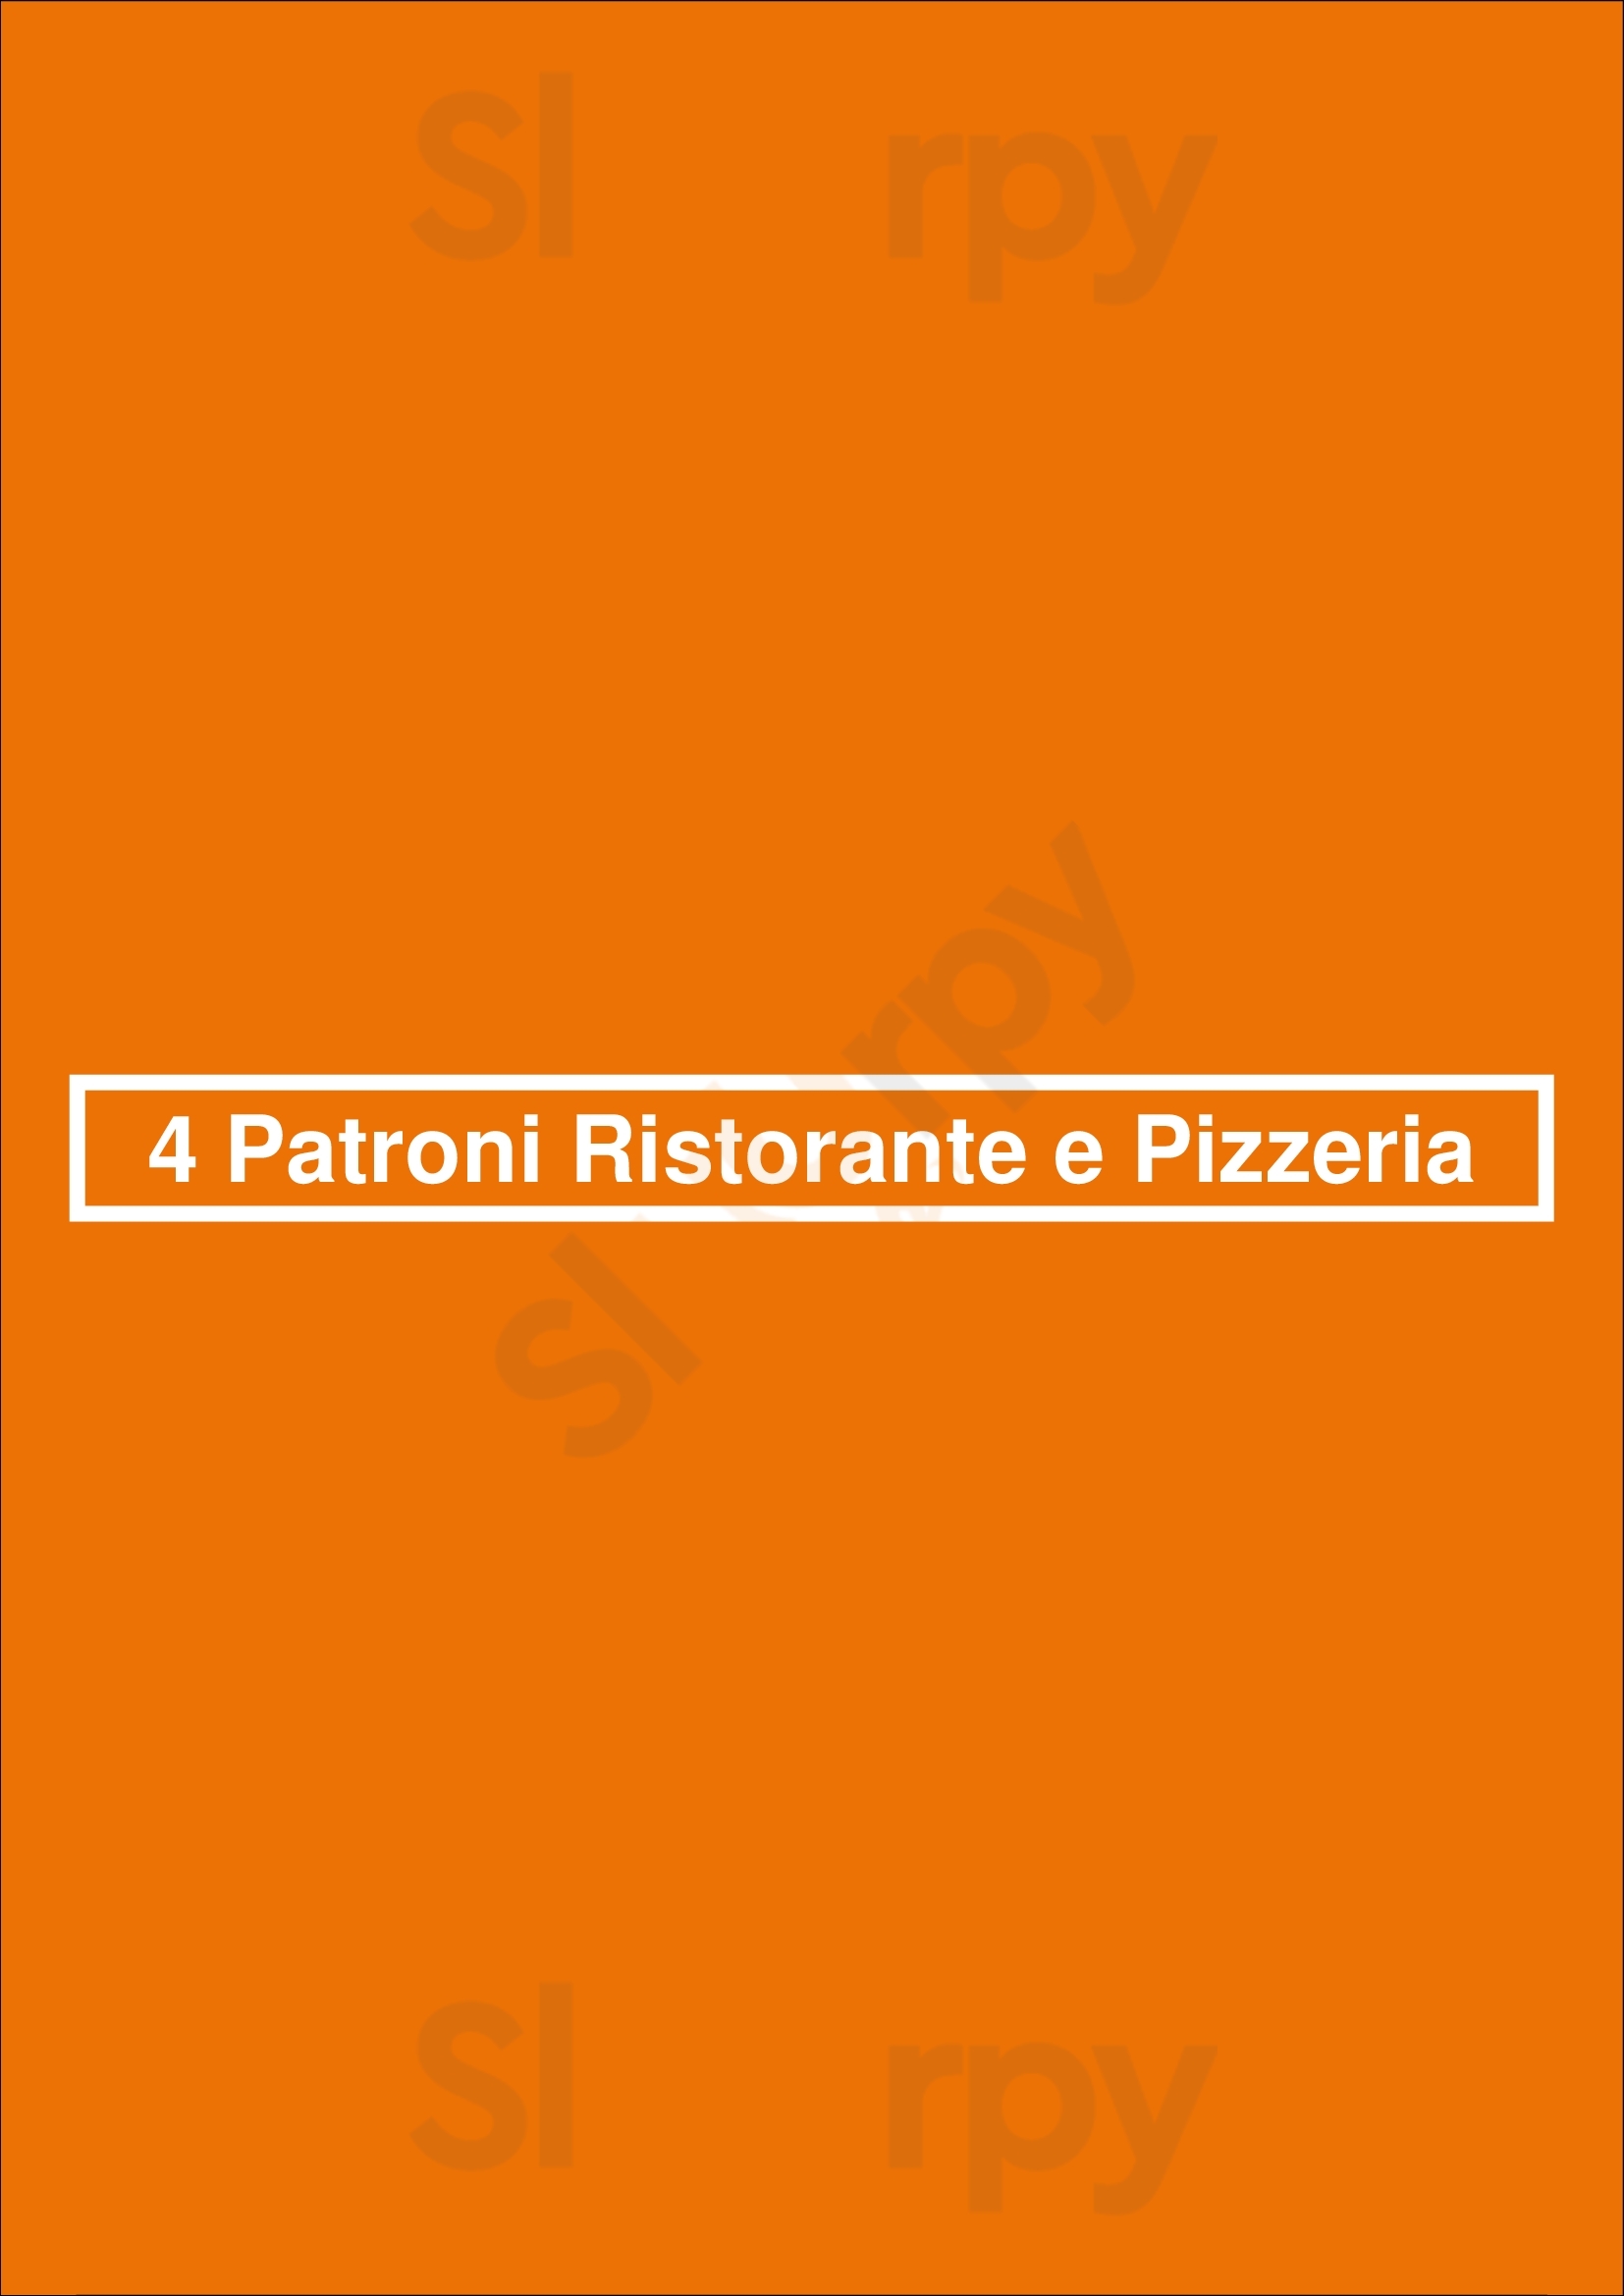 4 Patroni Ristorante E Pizzeria Rio Tinto Menu - 1